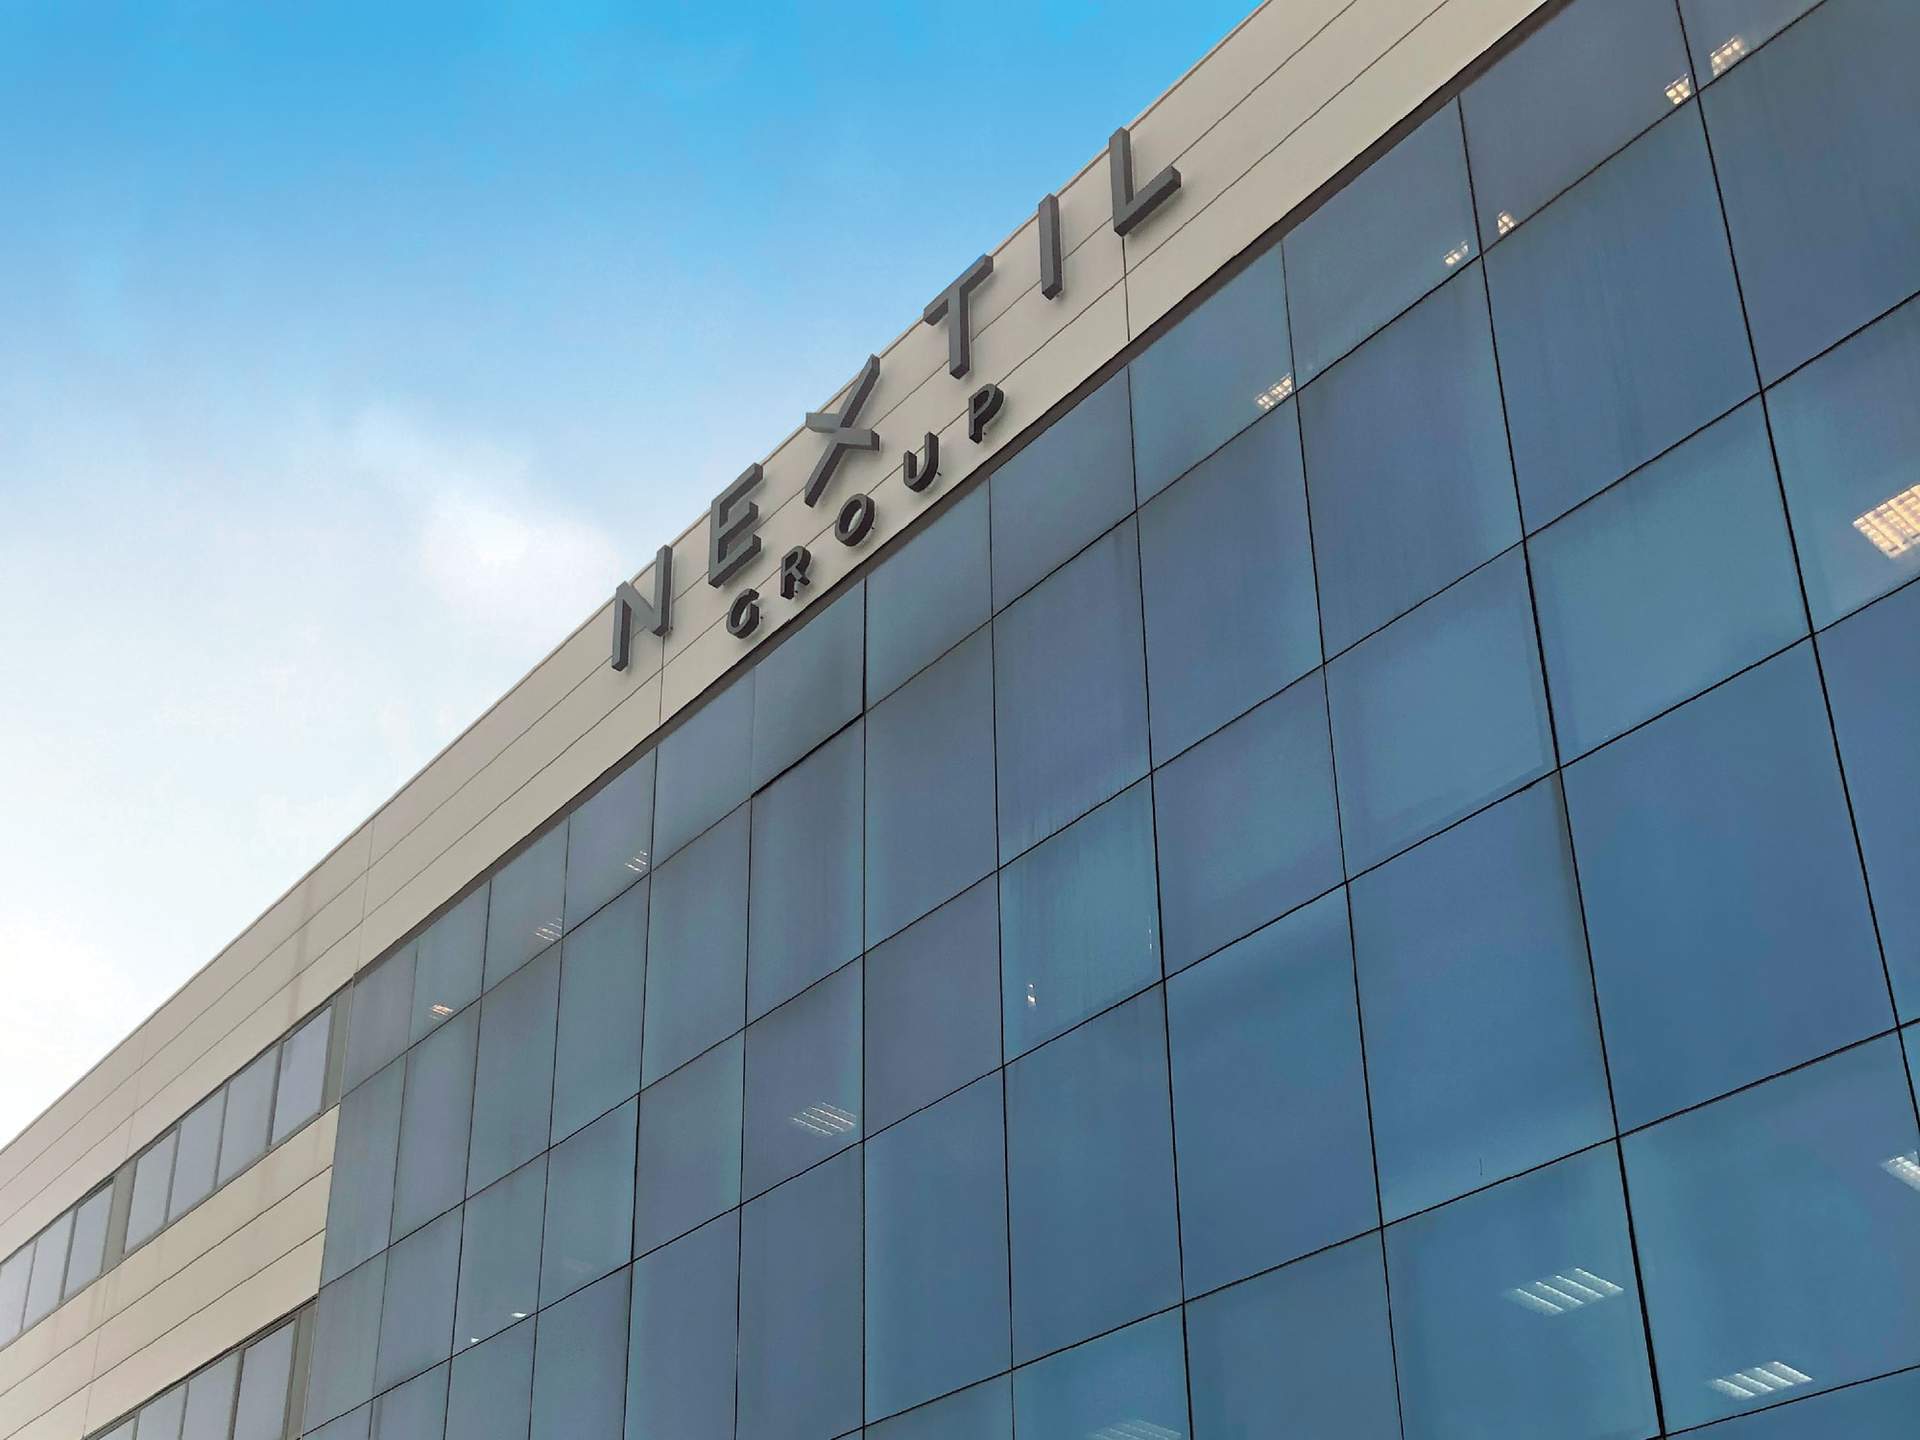 Nextil obtuvo un Ebitda de 2 millones en el primer semestre